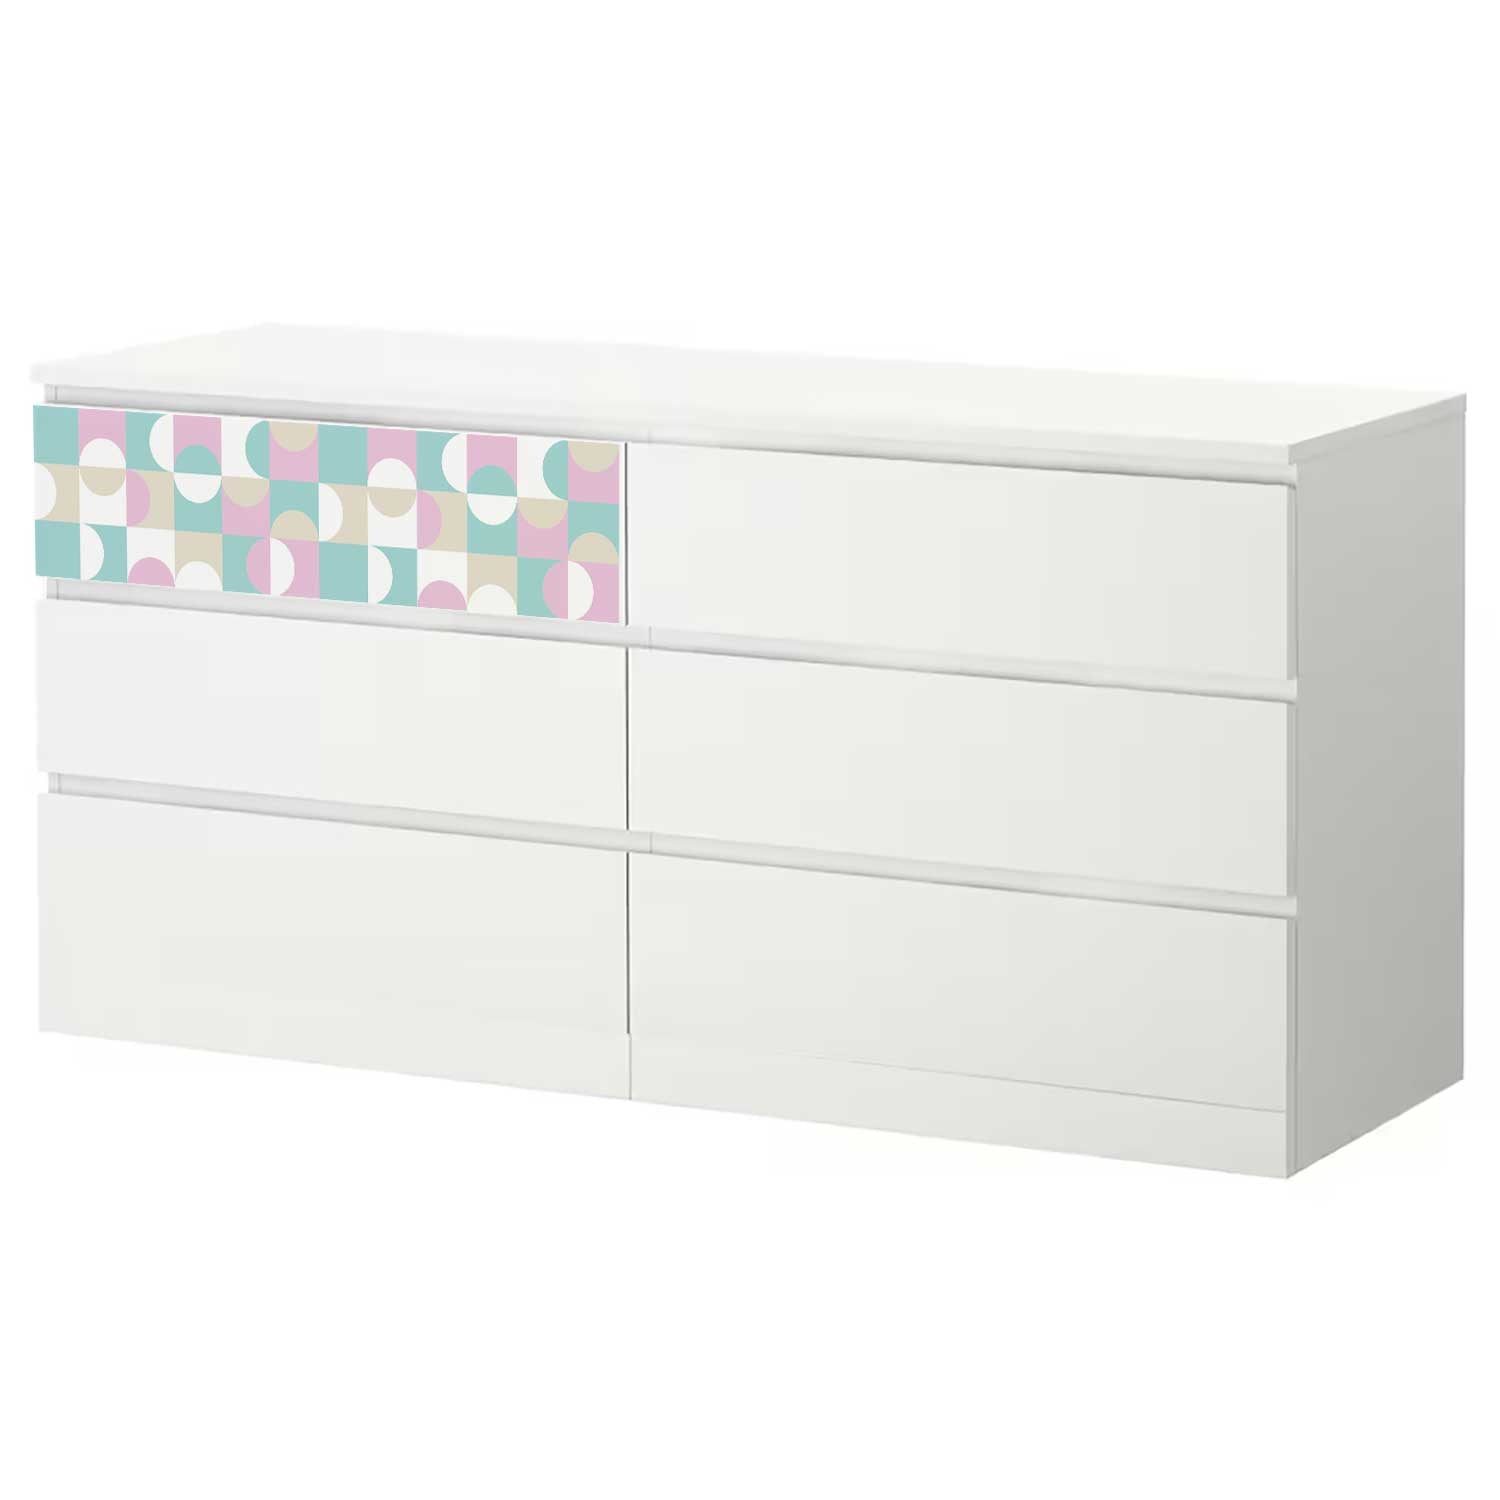 Möbelfolie für IKEA MALM Kommode 6-Schubladen 160x78 cm 'Bauhaus Fliesen'